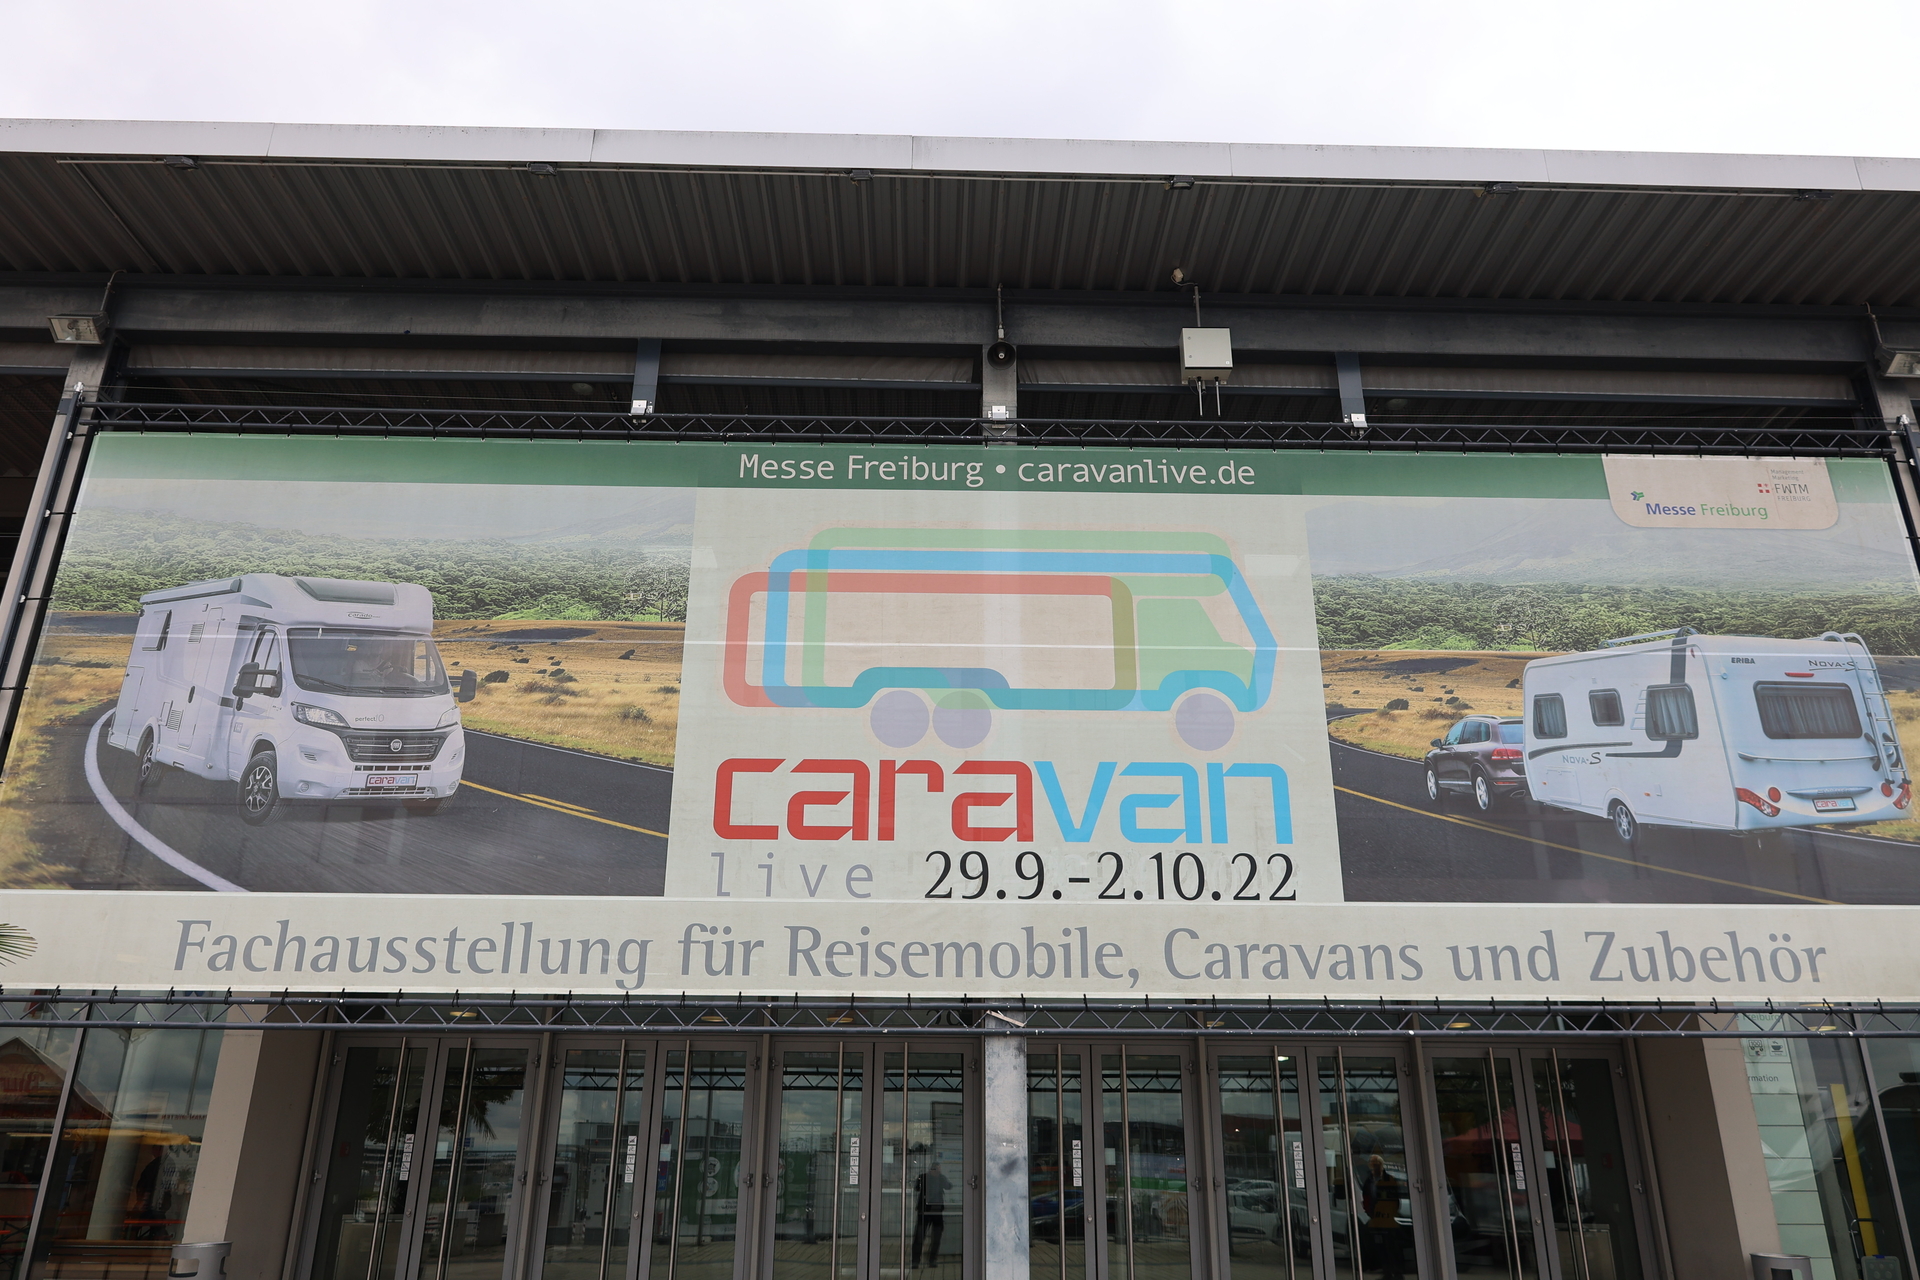 Bild: Die Caravanlive in Freiburg läuft bis zum Sonntag, 2. Oktober 2022